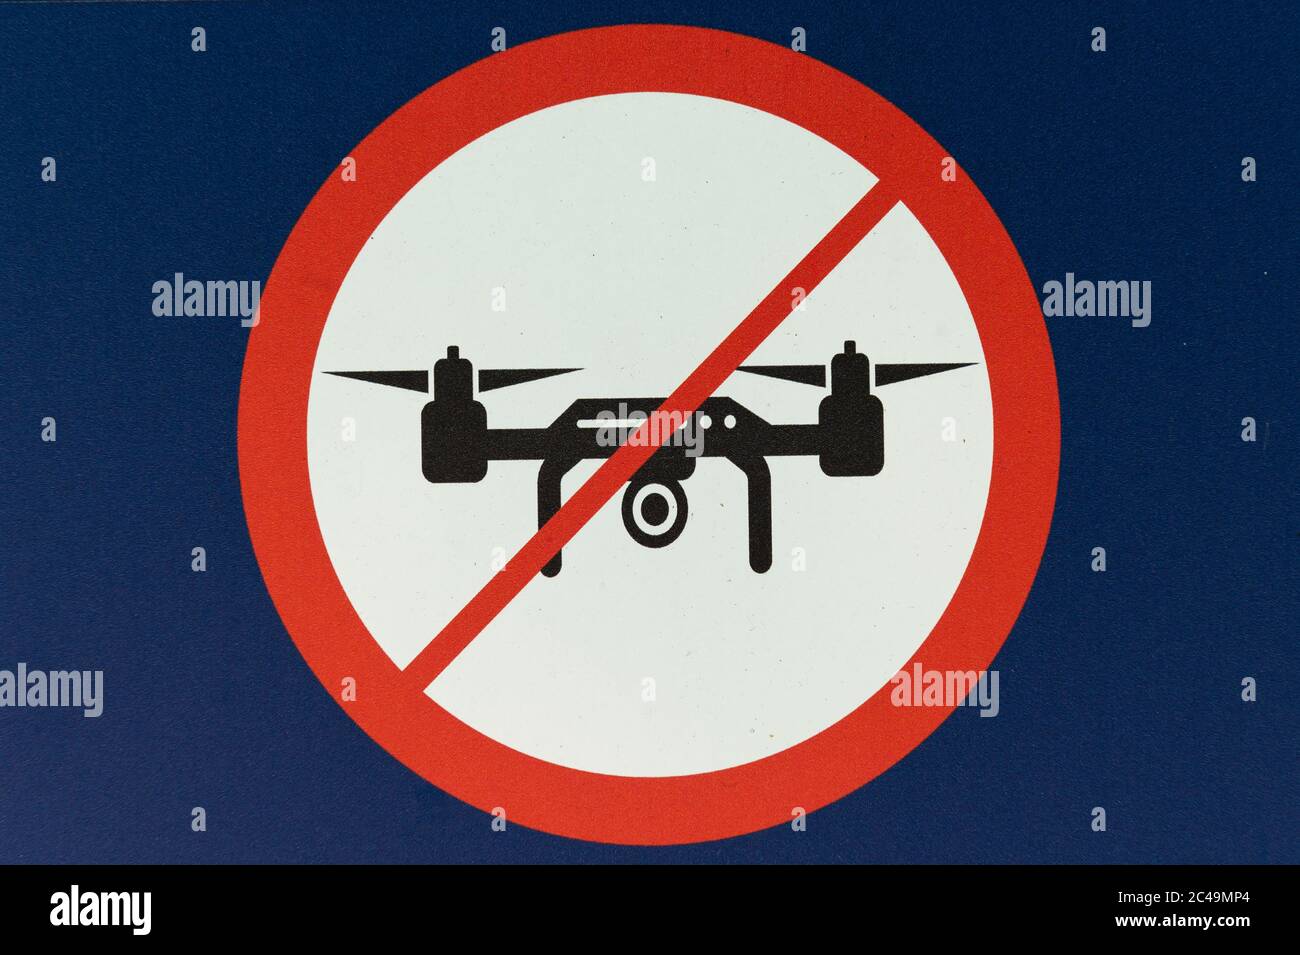 24. Juni 2020, Hessen, Frankfurt/Main: Ein Schild am Frankfurter Flughafen weist auf ein Drohnenflugverbot hin. Foto: Silas Stein/dpa Stockfoto